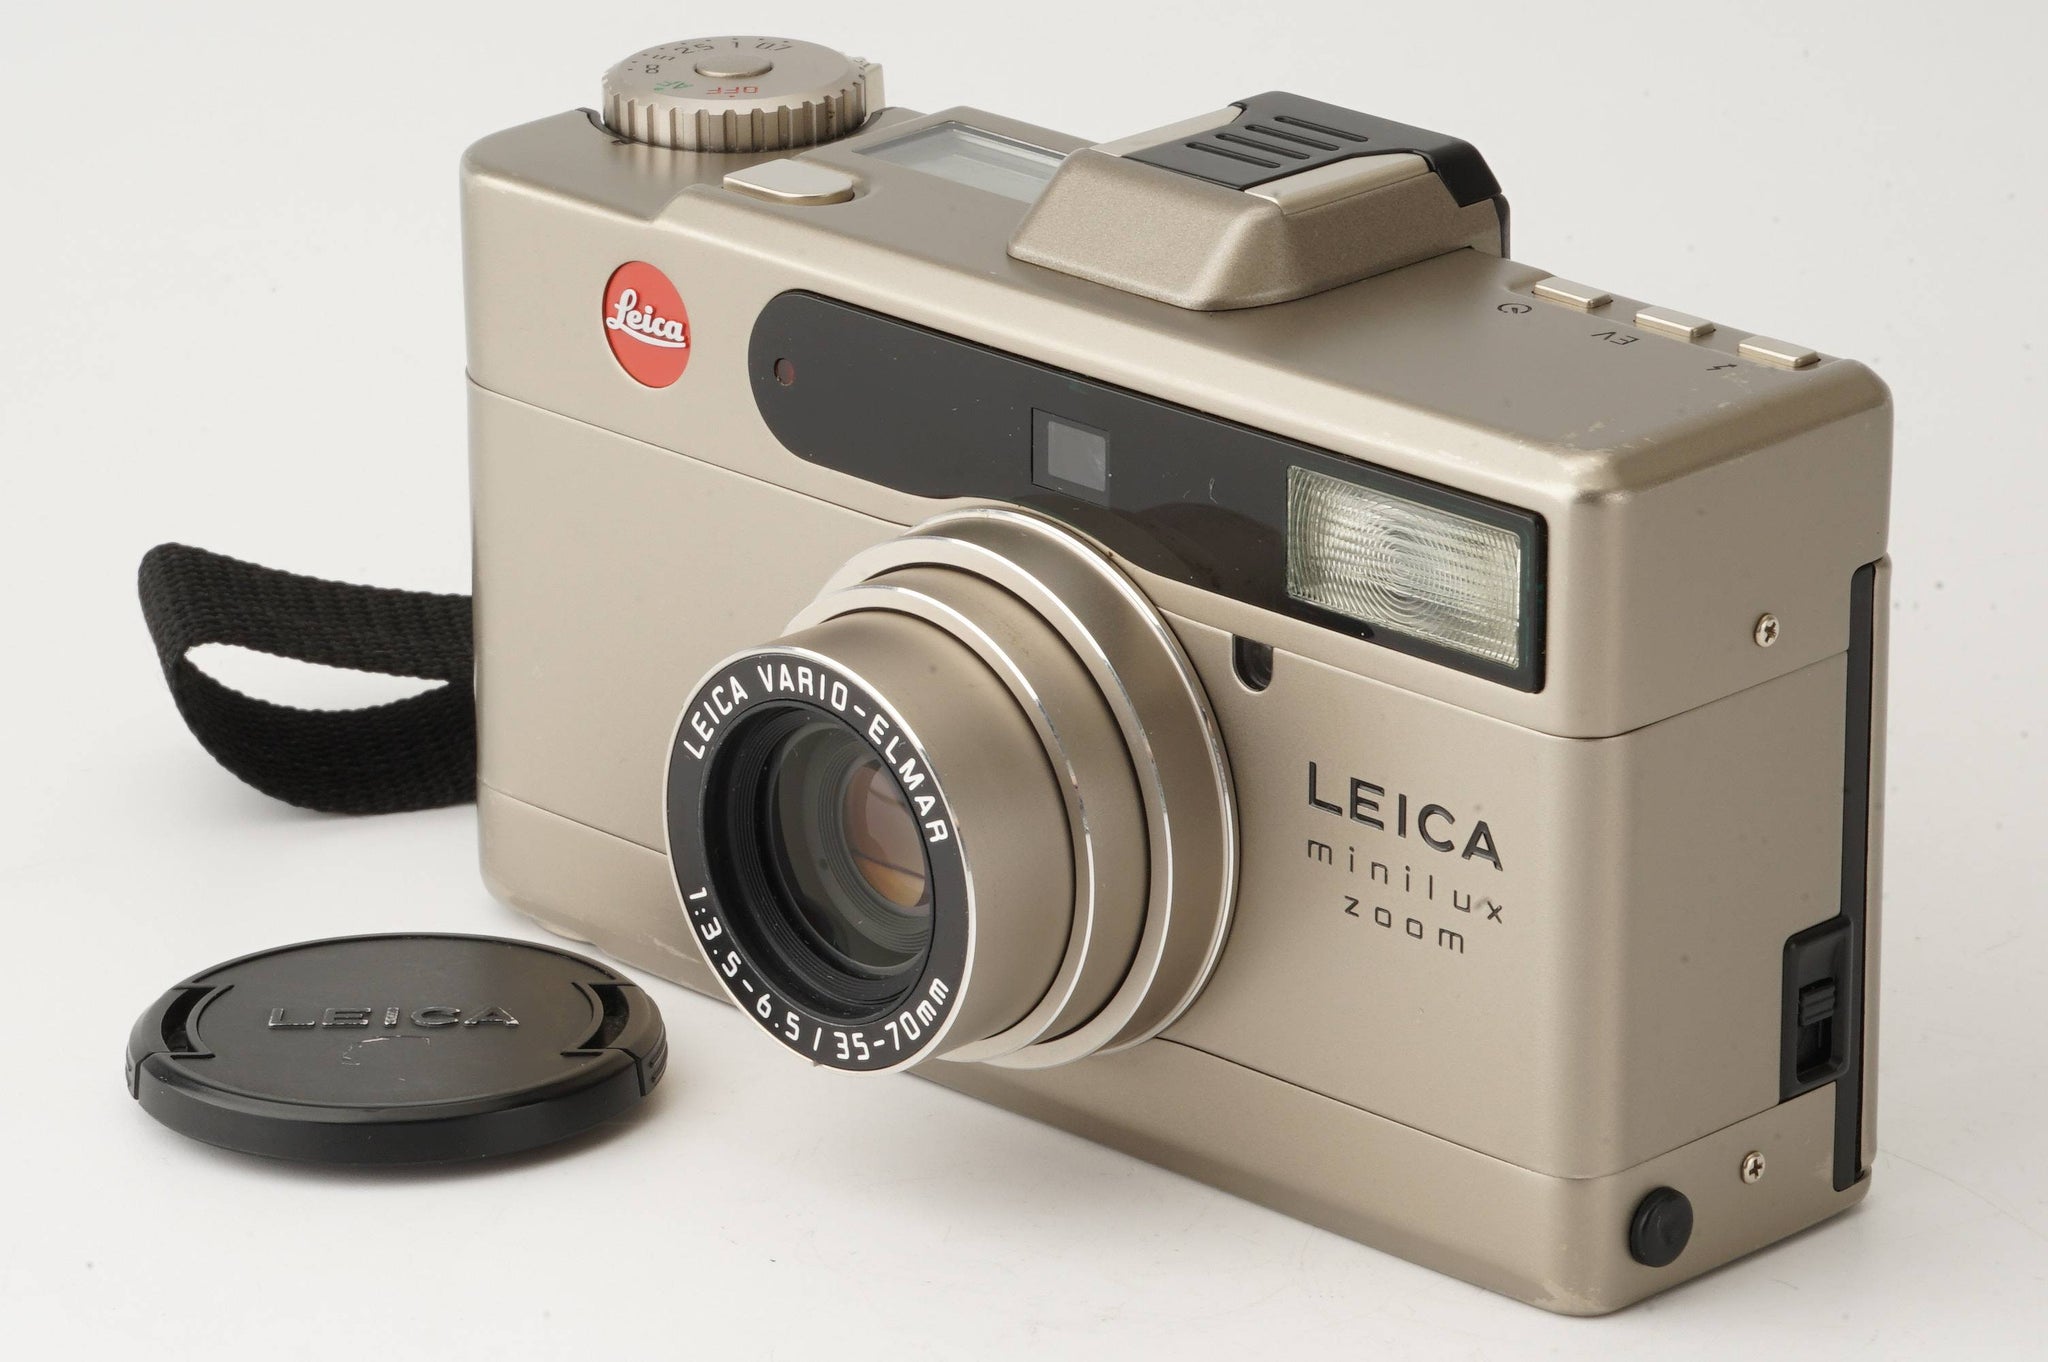 Leica minilux zoom 【動作確認済み】上部液晶は綺麗に表示されます